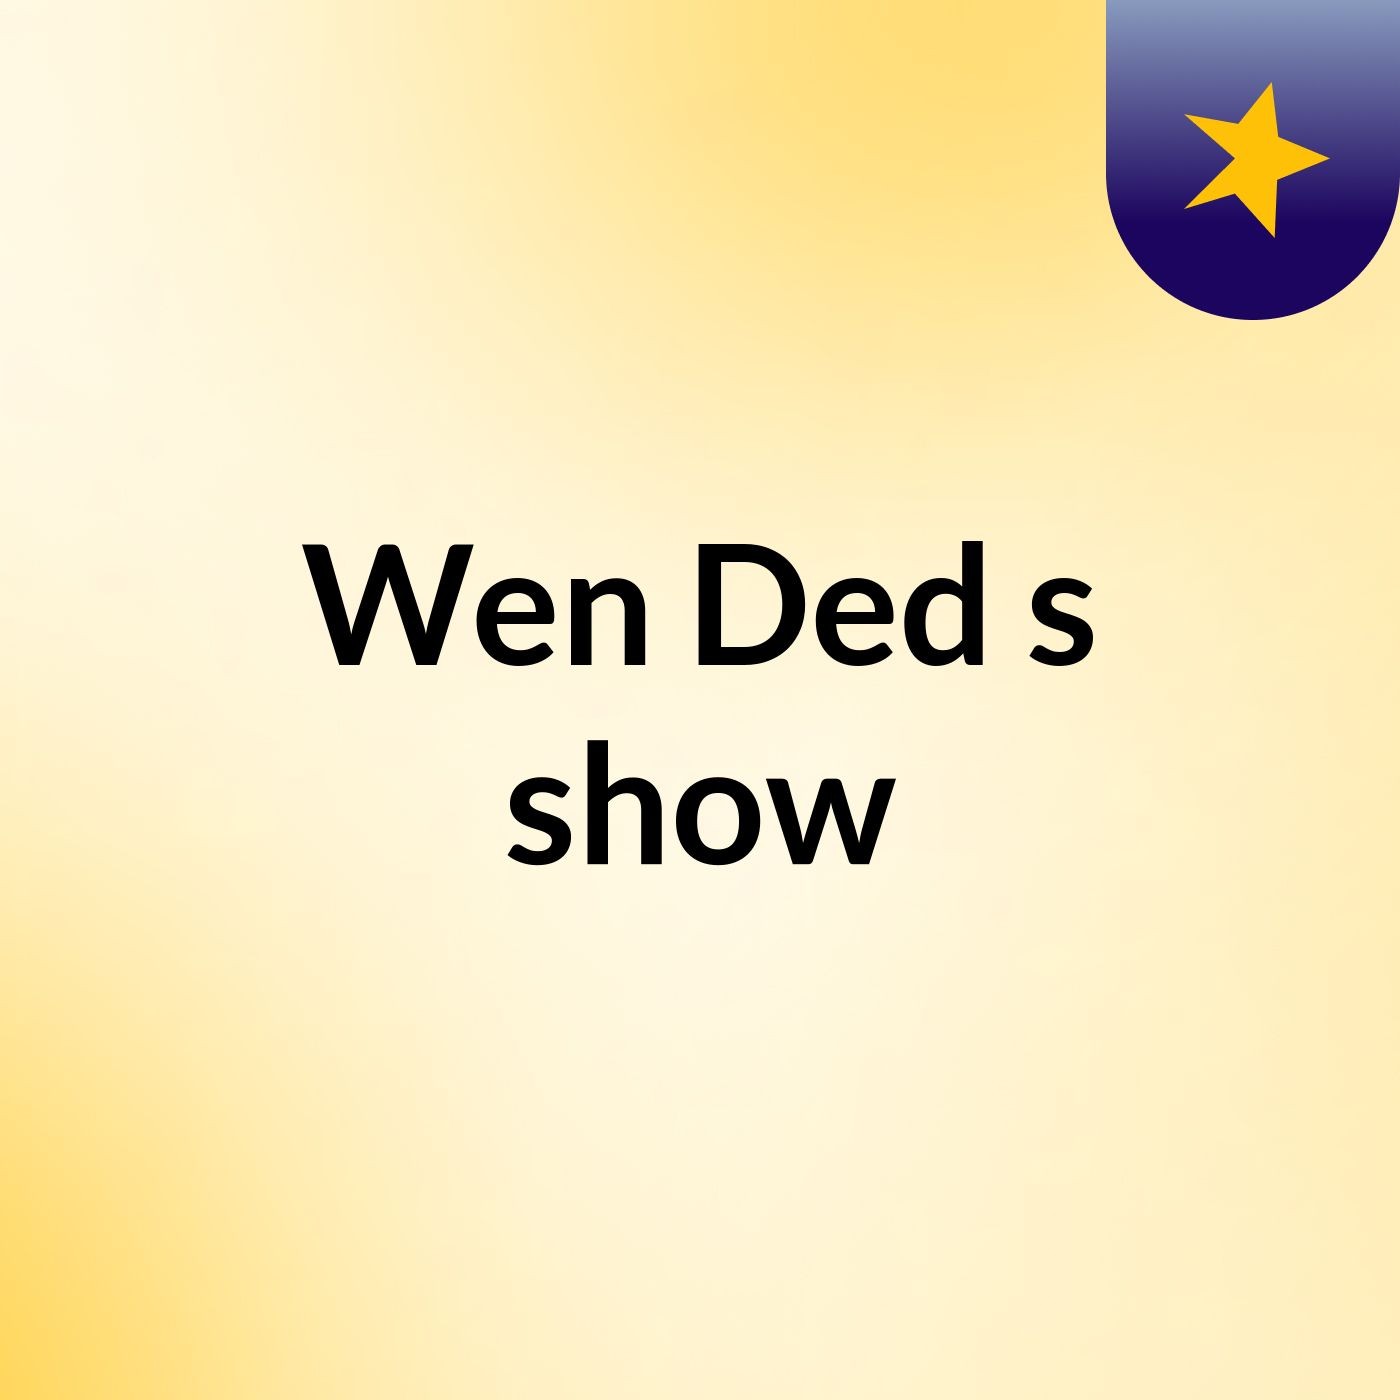 Wen Ded's show